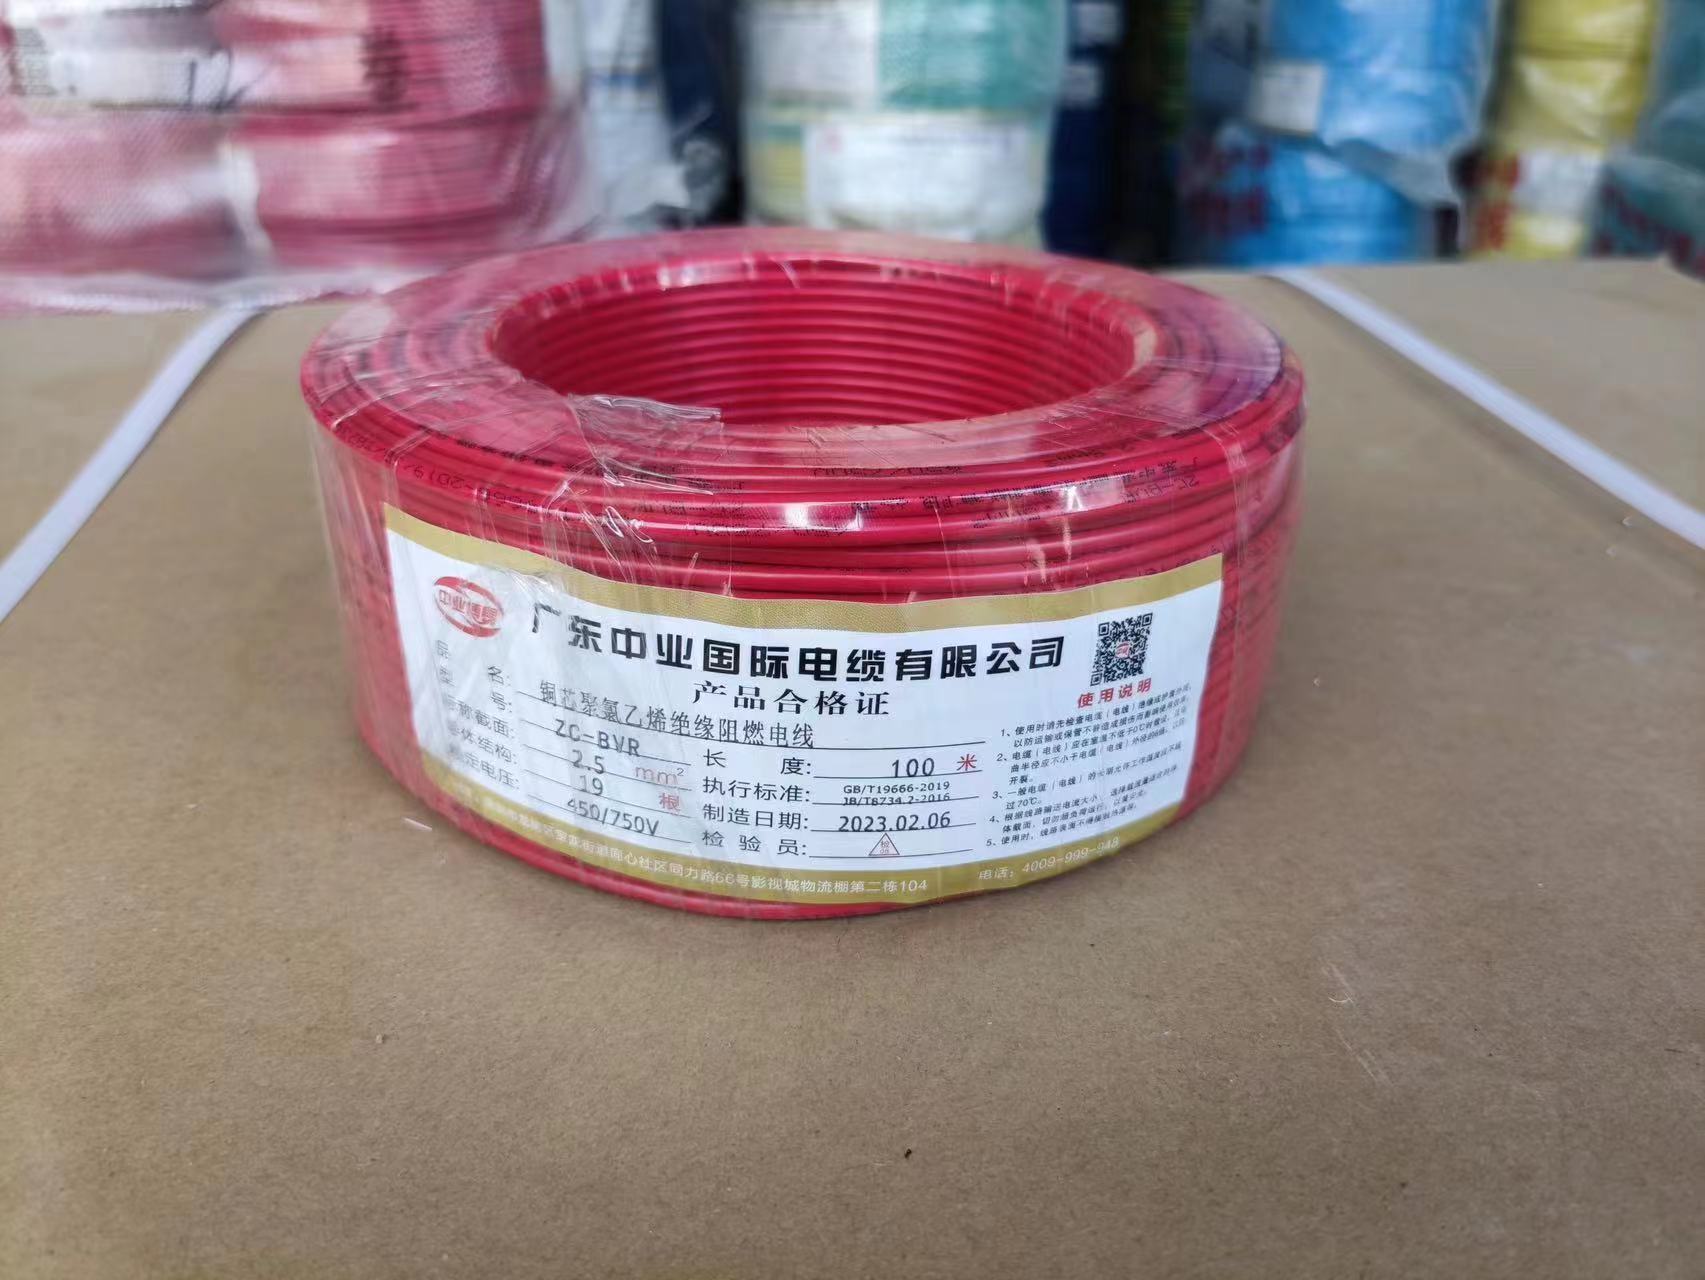 中业电缆 BVR-0.75 广东中业国际电缆有限公司